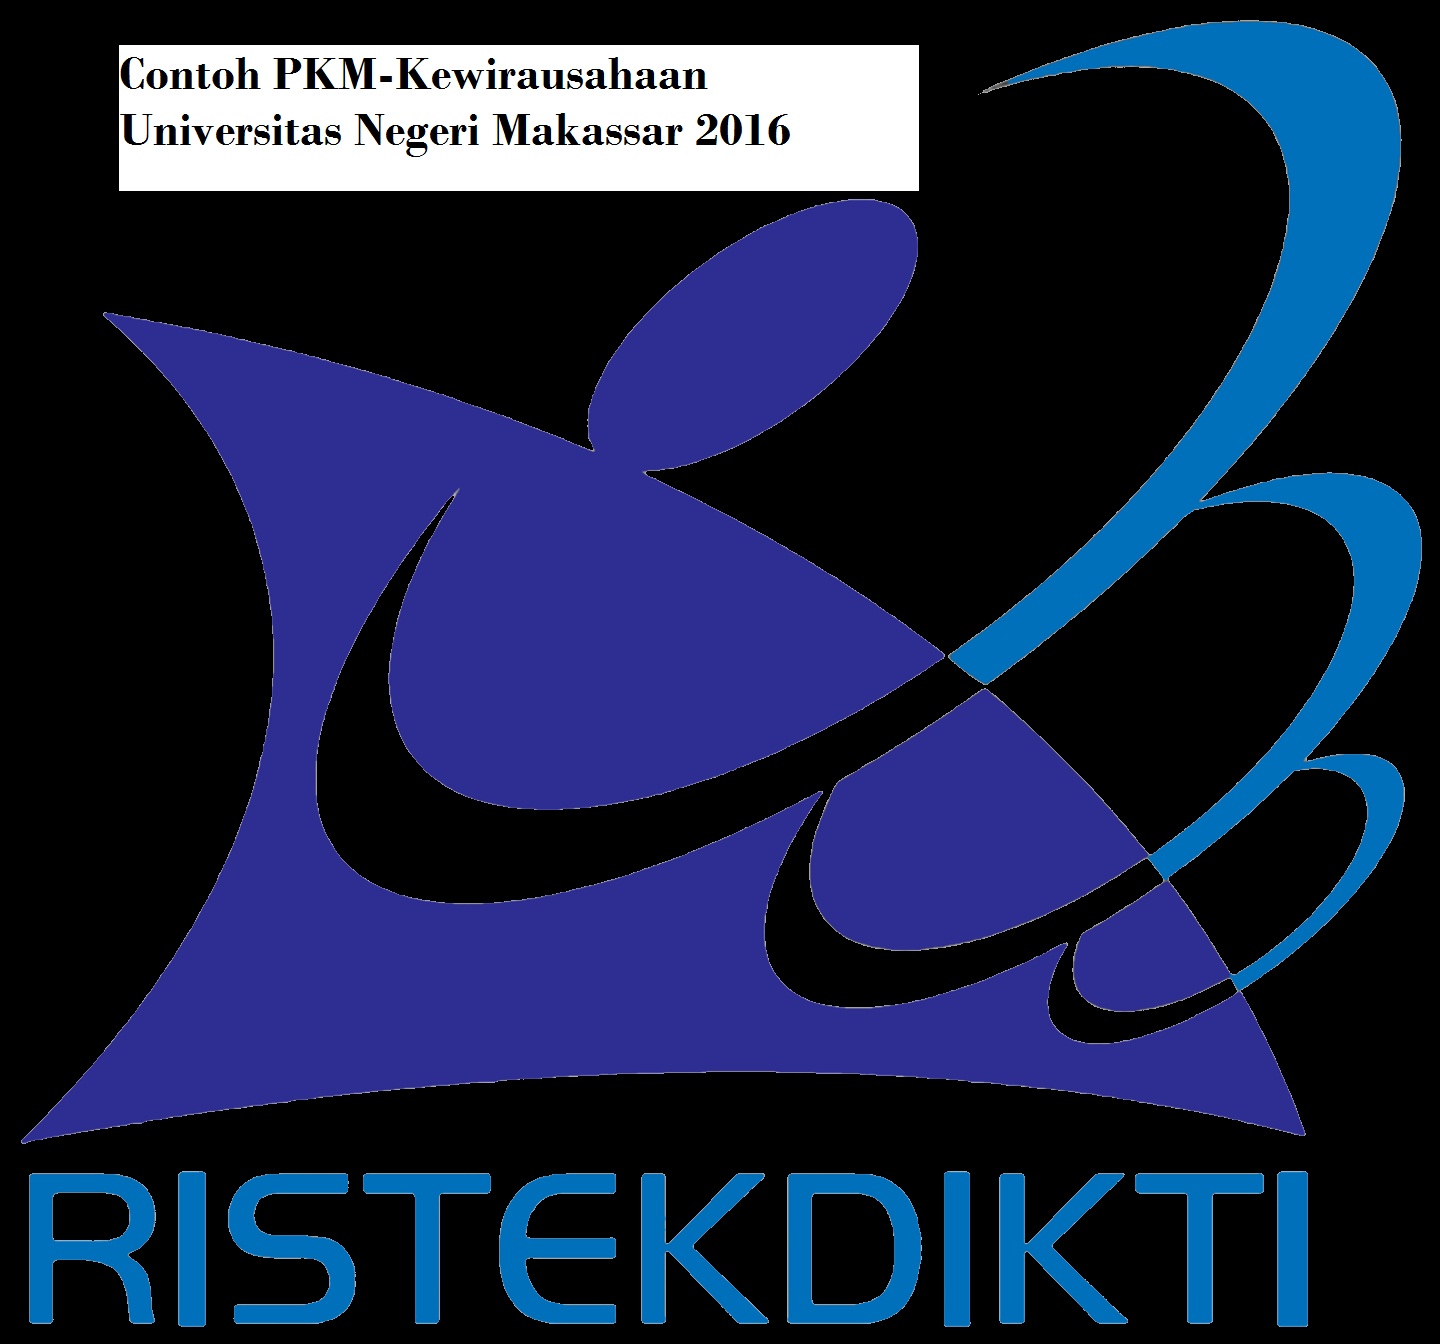 Contoh PKM-Kewirausahaan Universitas Negeri Makassar 2016 